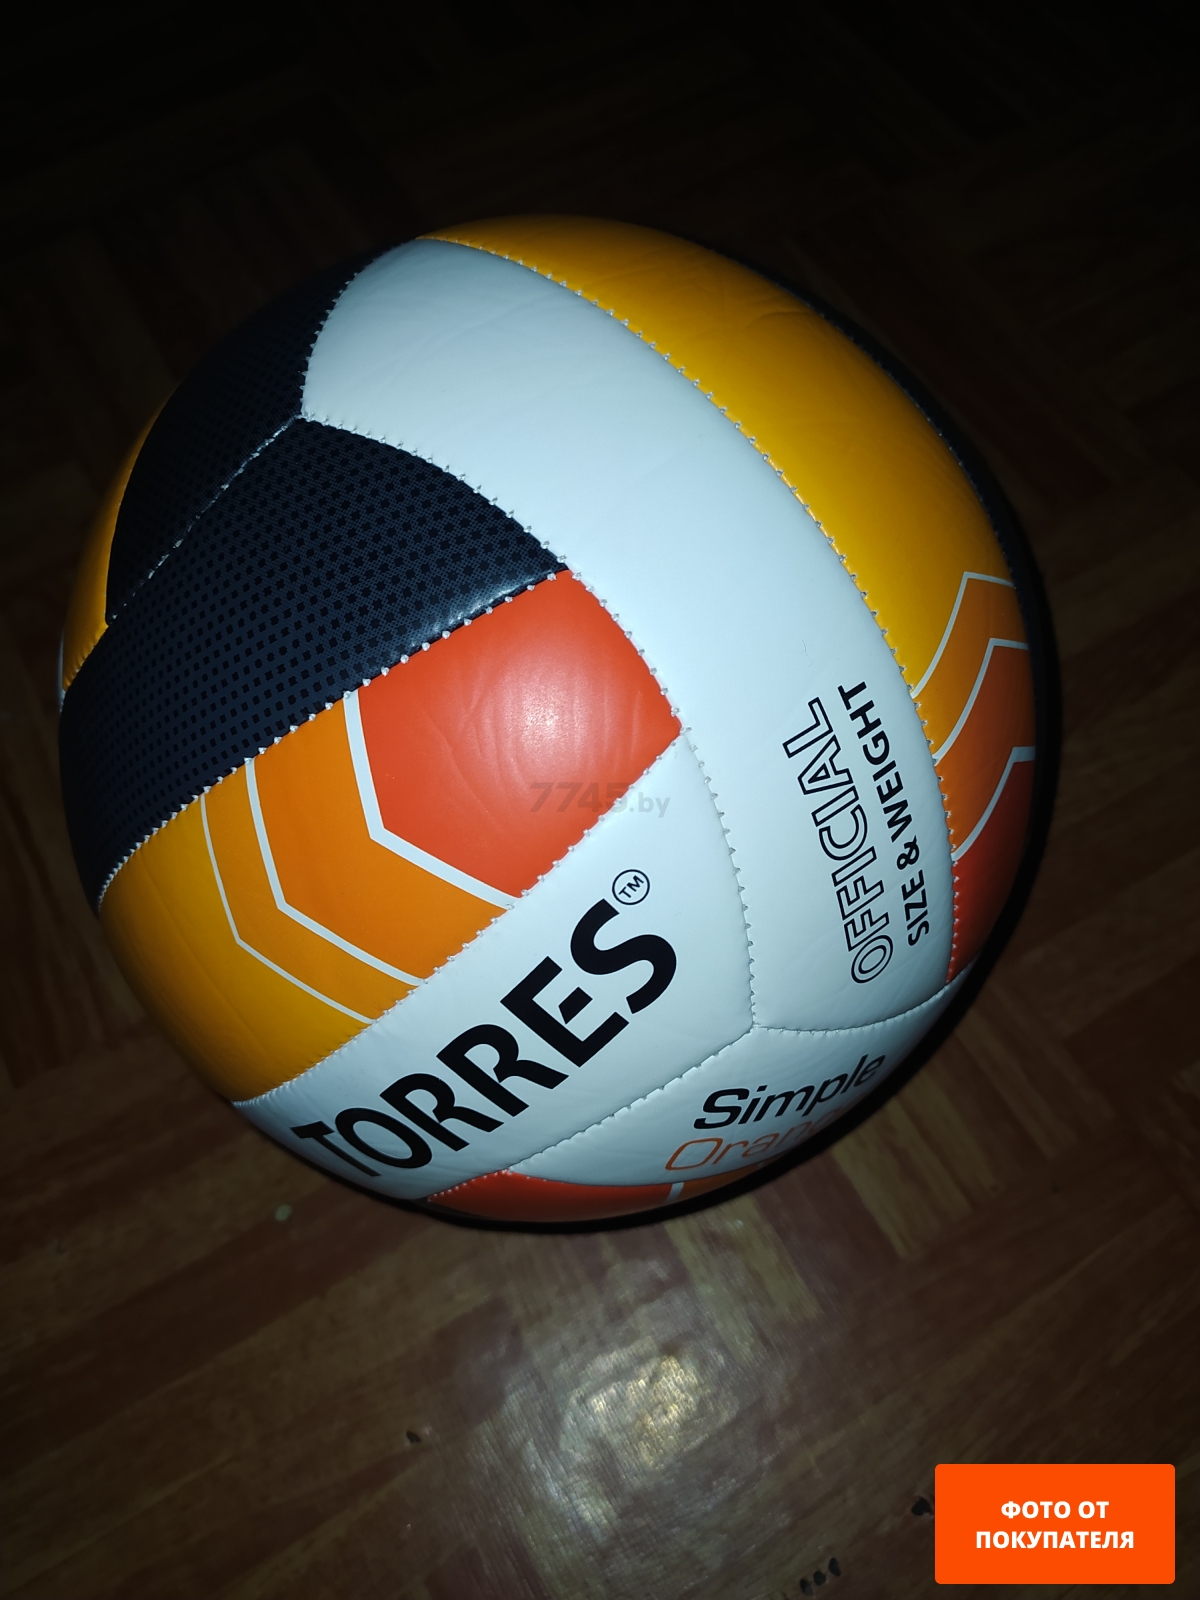 Волейбольный мяч TORRES Simple Orange №5 (V32125) - Фото 3